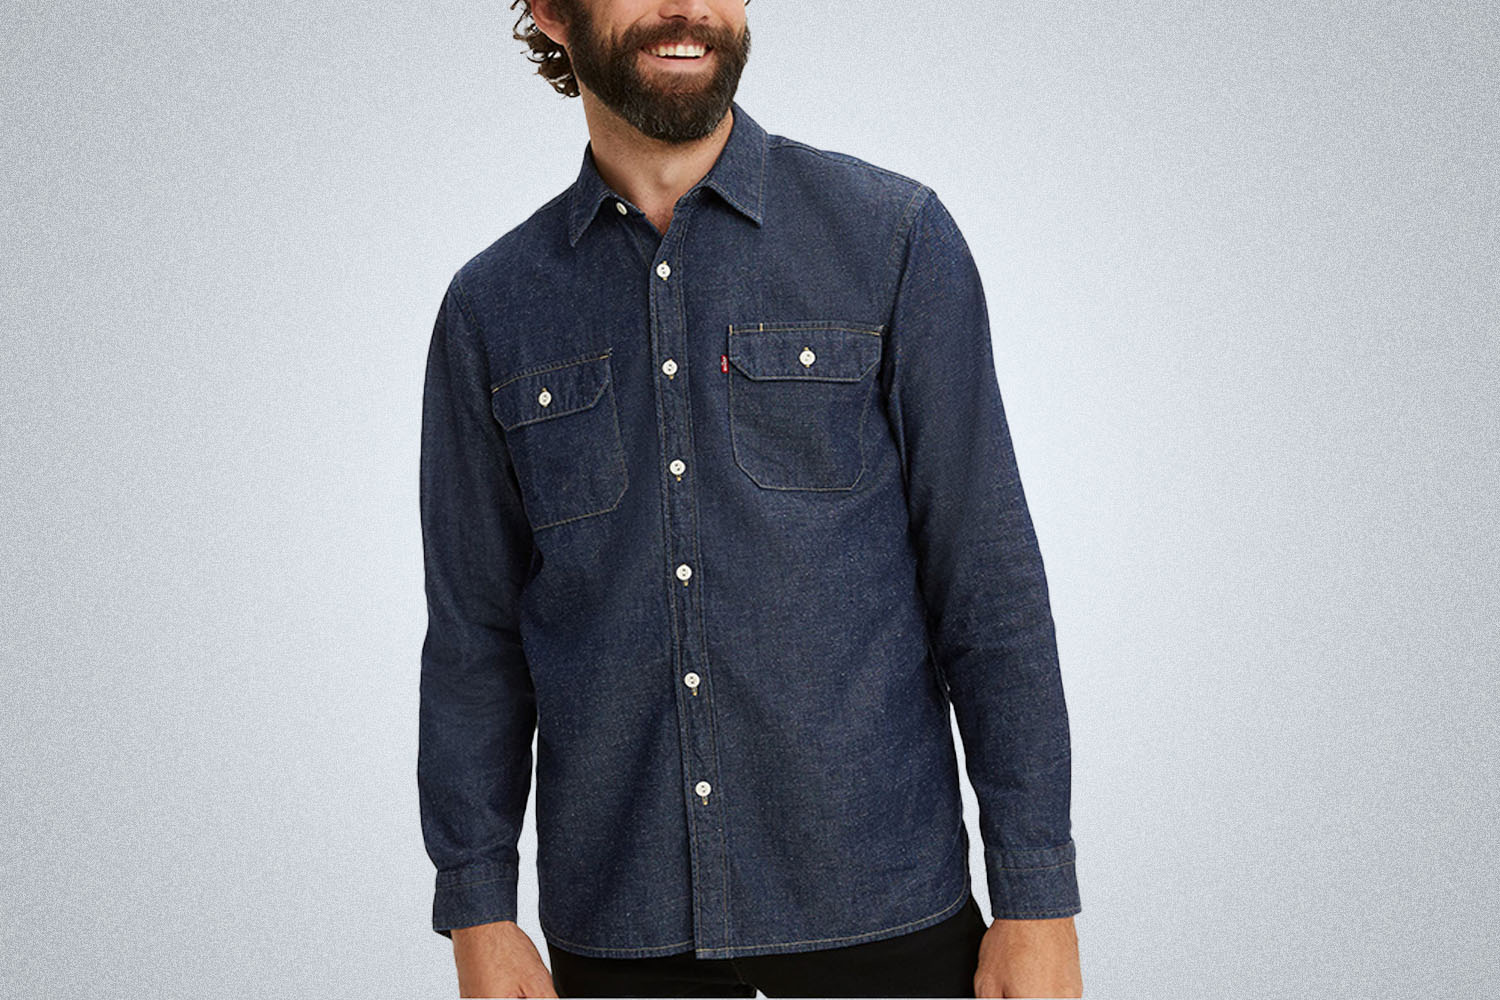 A model in a dark blue Levi's denim shirt on a grey background